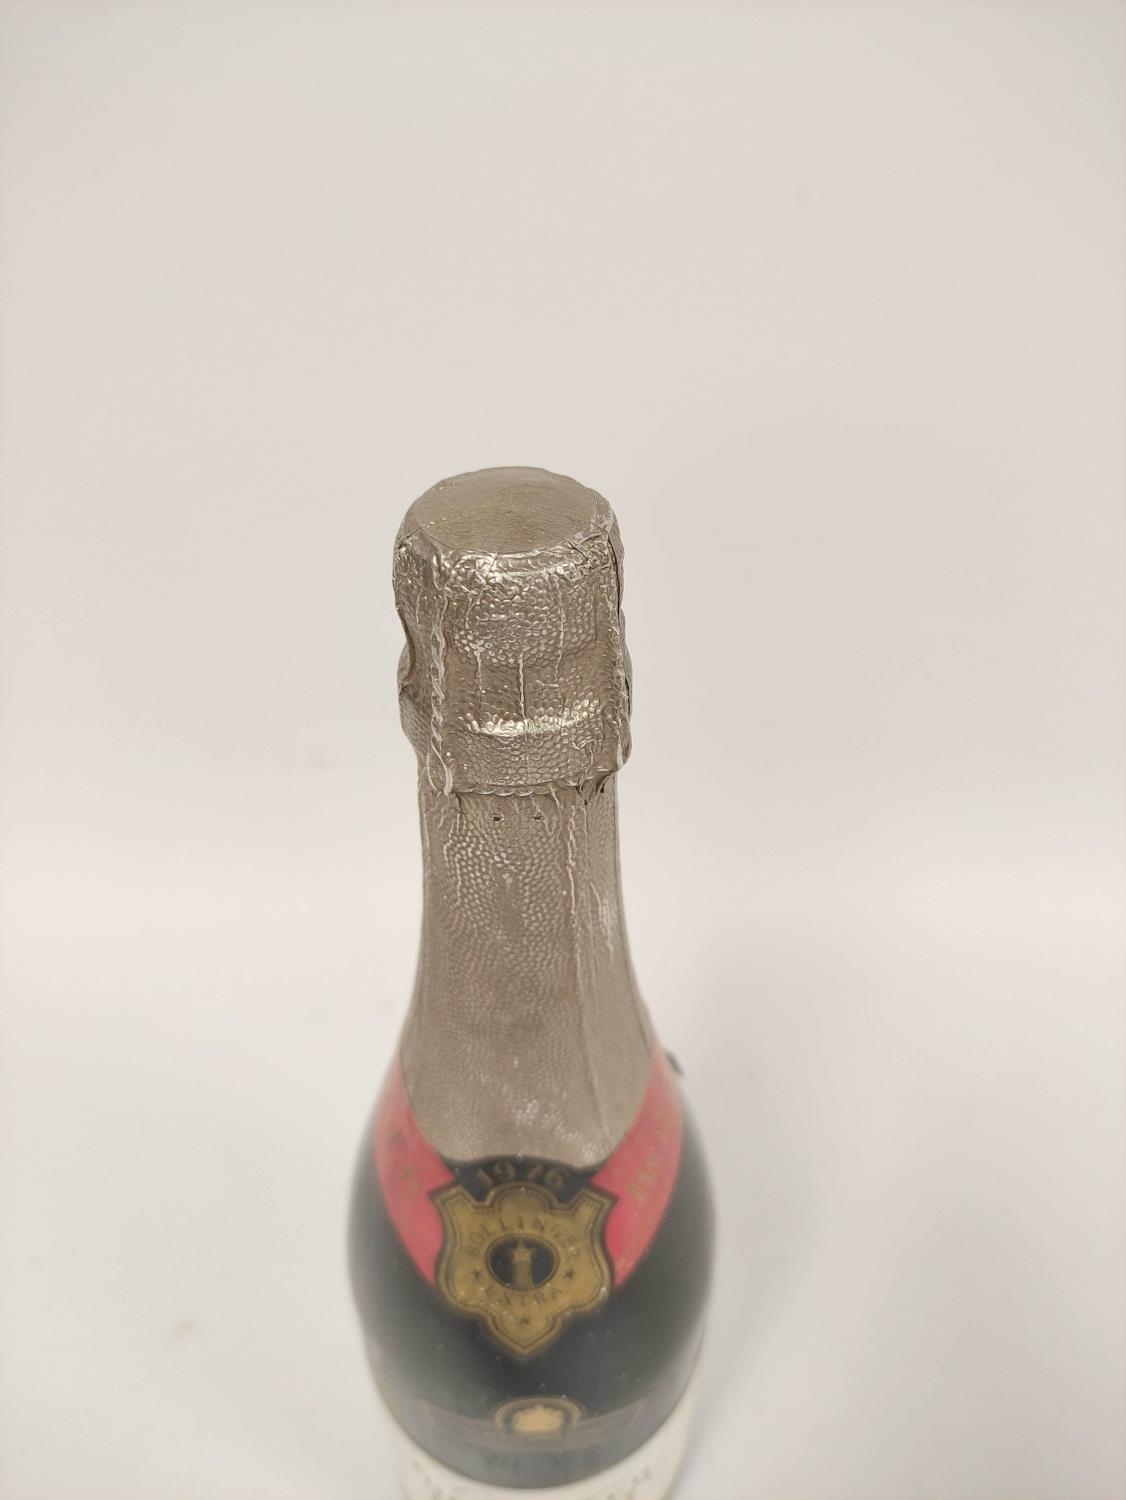 Bollinger 1976 vintage Brut champagne, 75cl. - Image 4 of 6